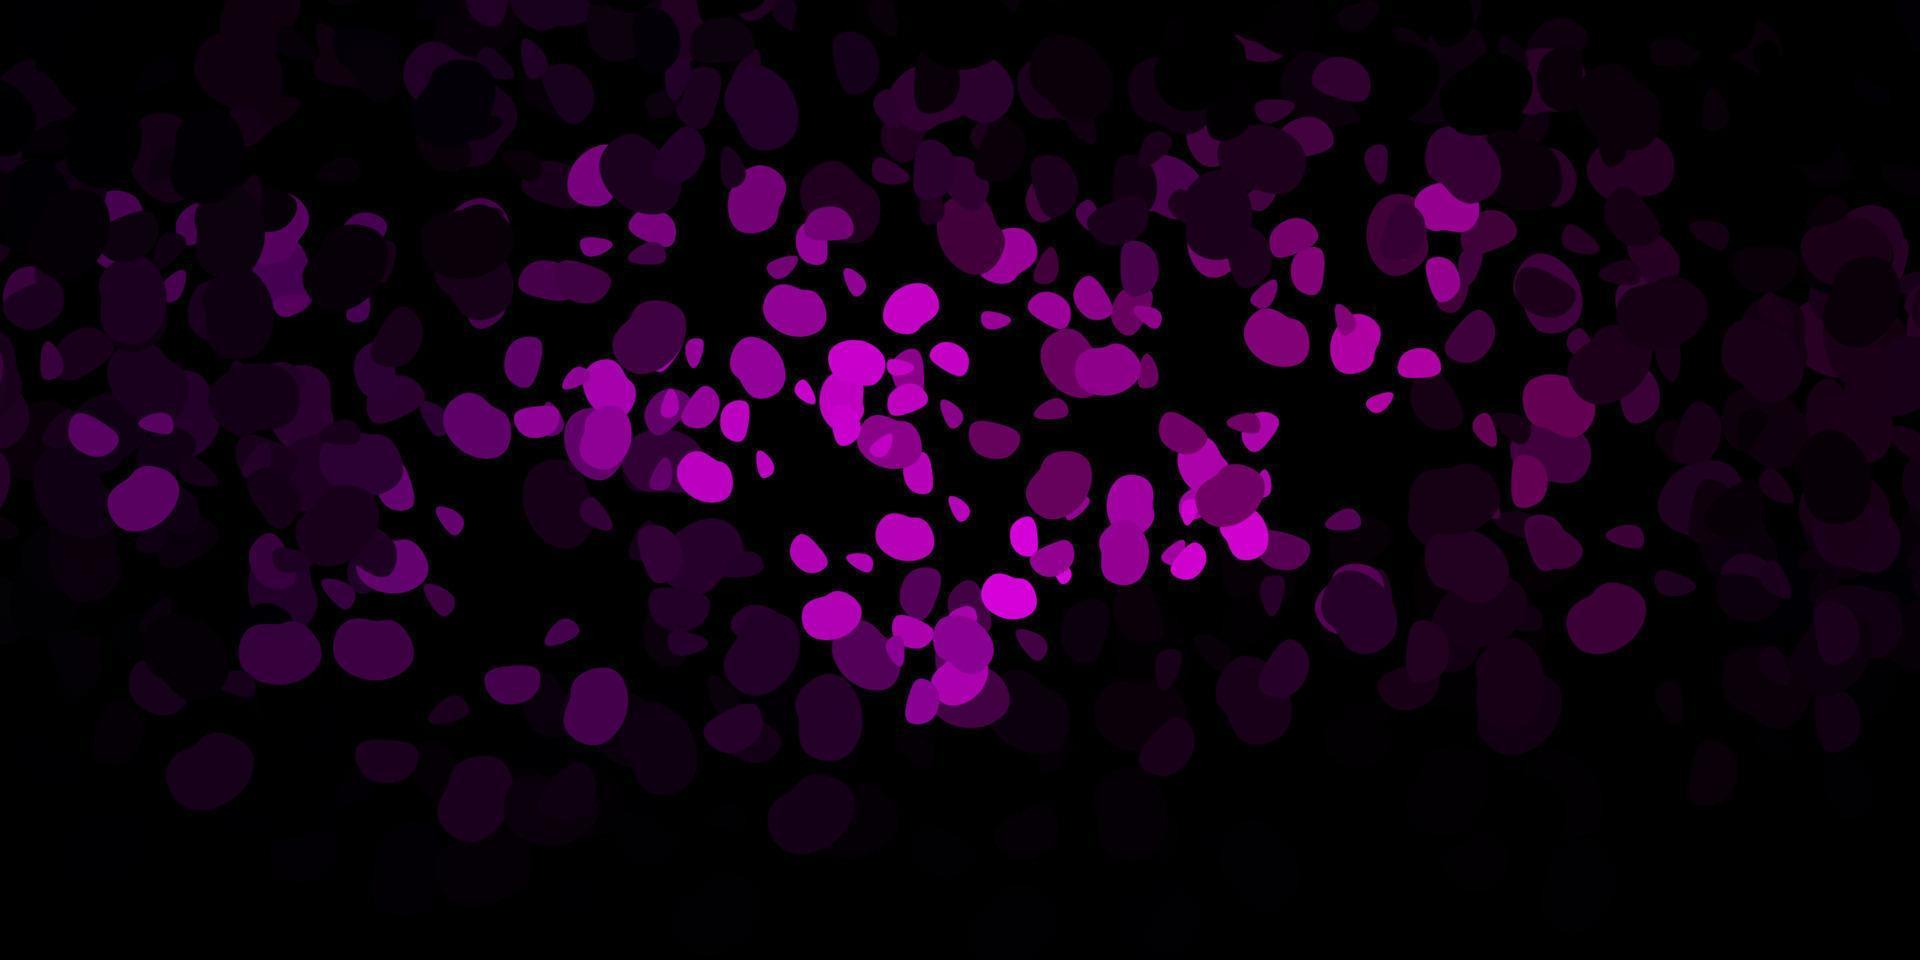 sfondo vettoriale viola scuro con forme casuali.